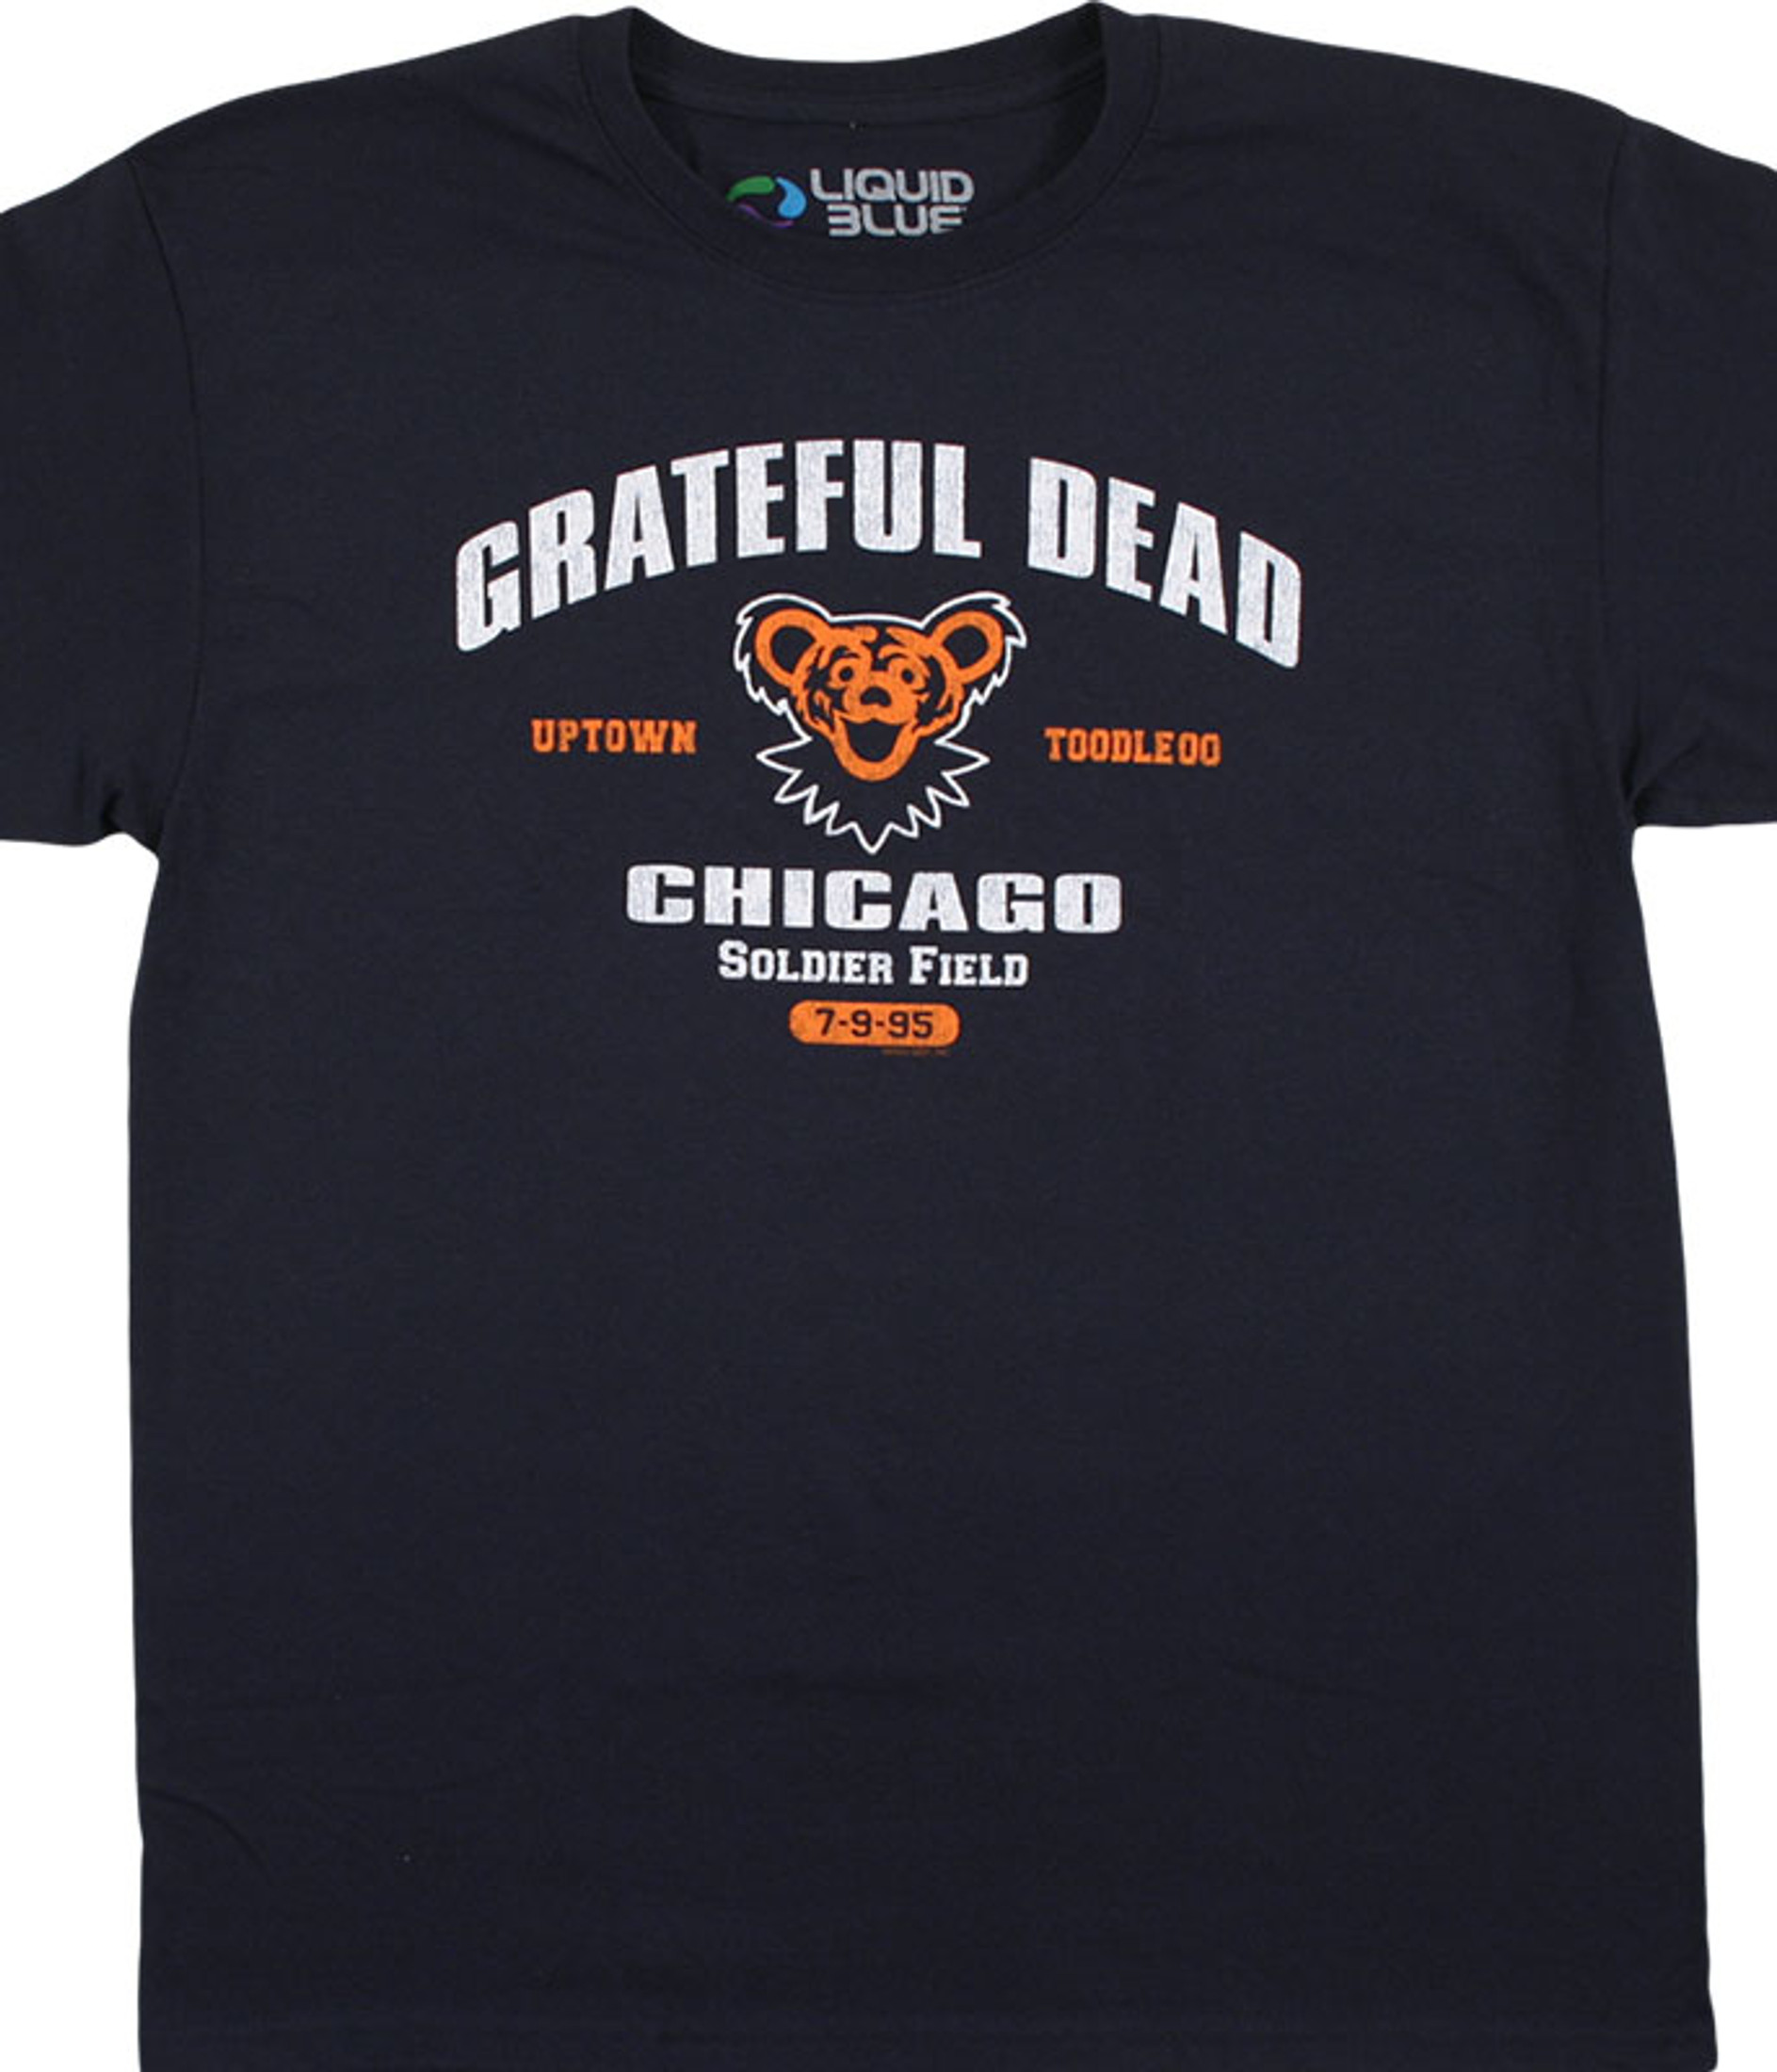 Authentic Vintage Grateful Dead Shirt L.L. Rain Dancing Bears